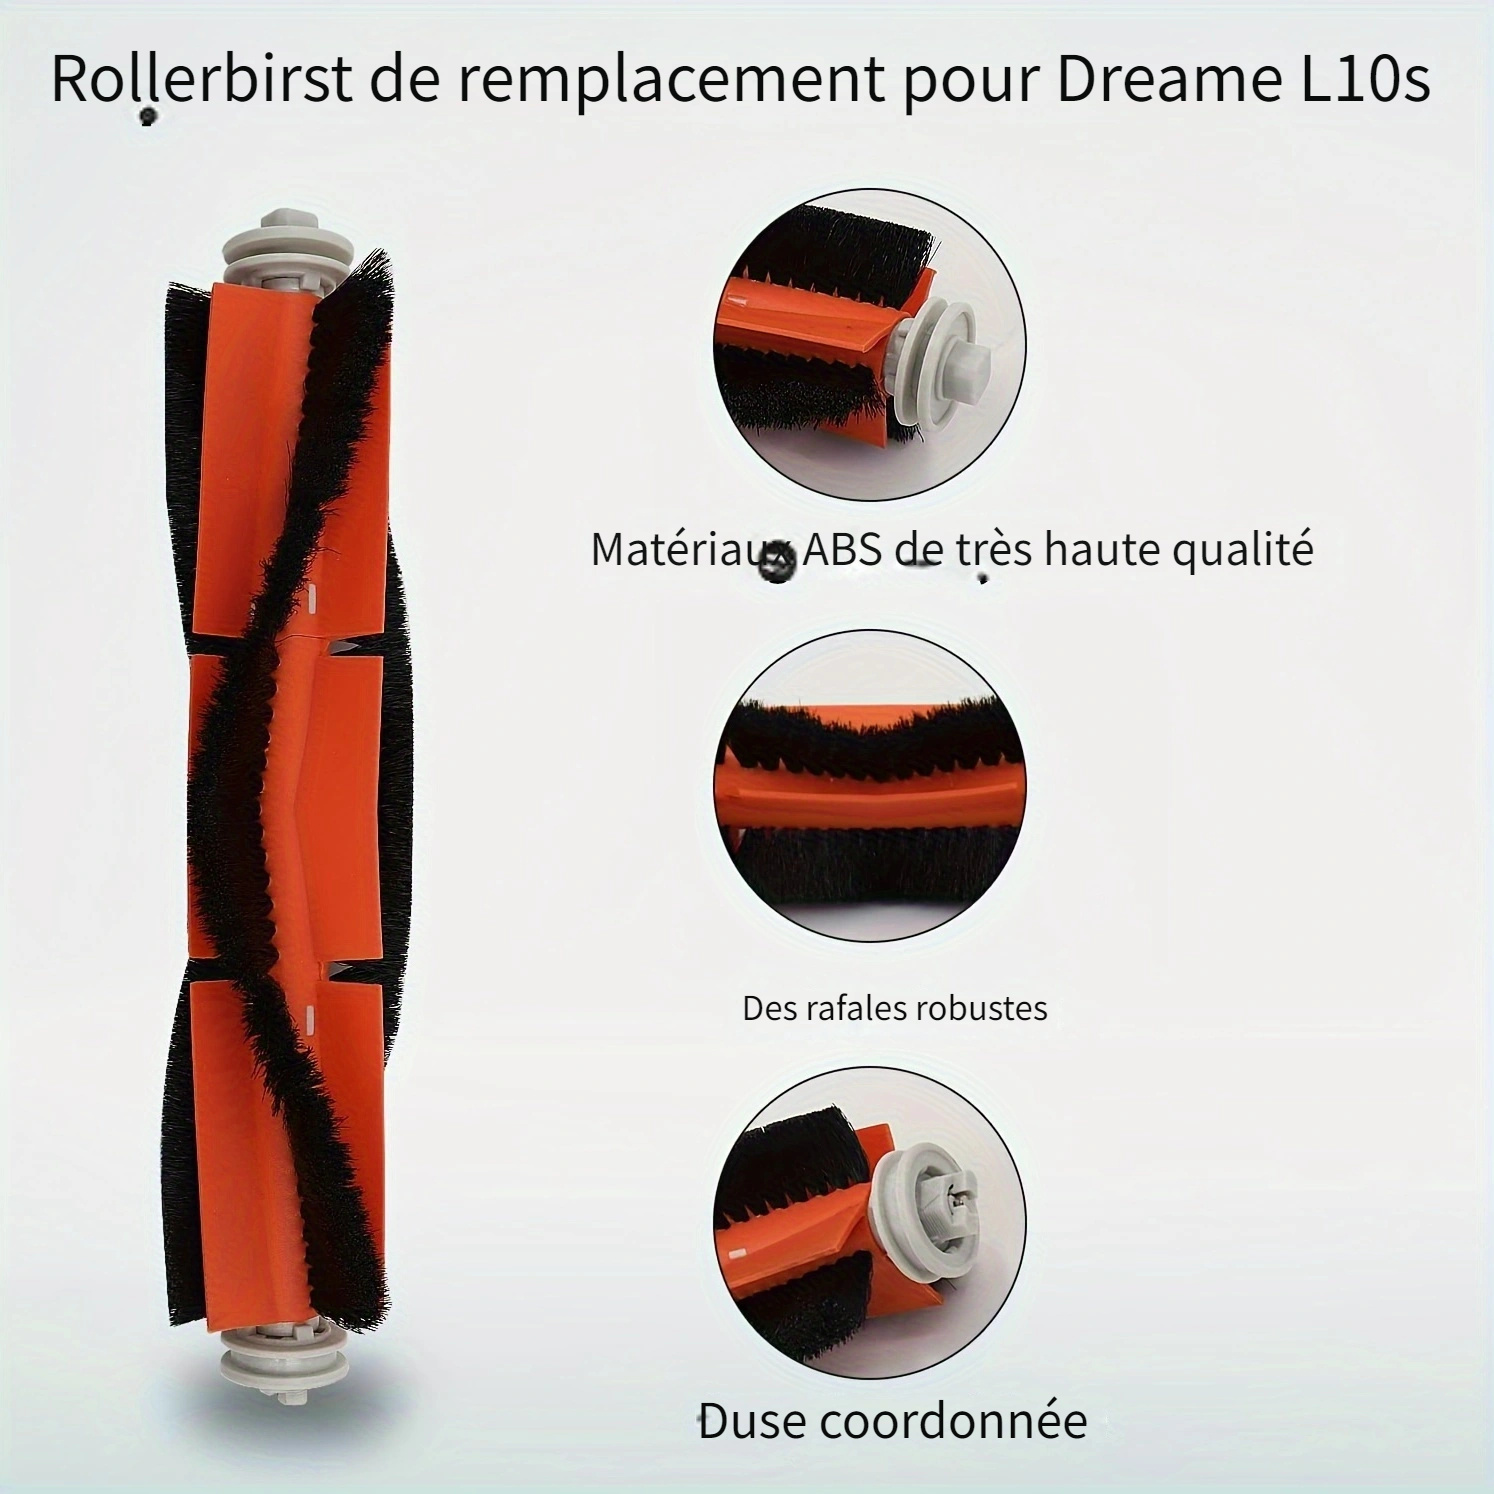 Kit d'accessoires pour Dreame L10s Ultra/L10 Ultra, 6 sacs d